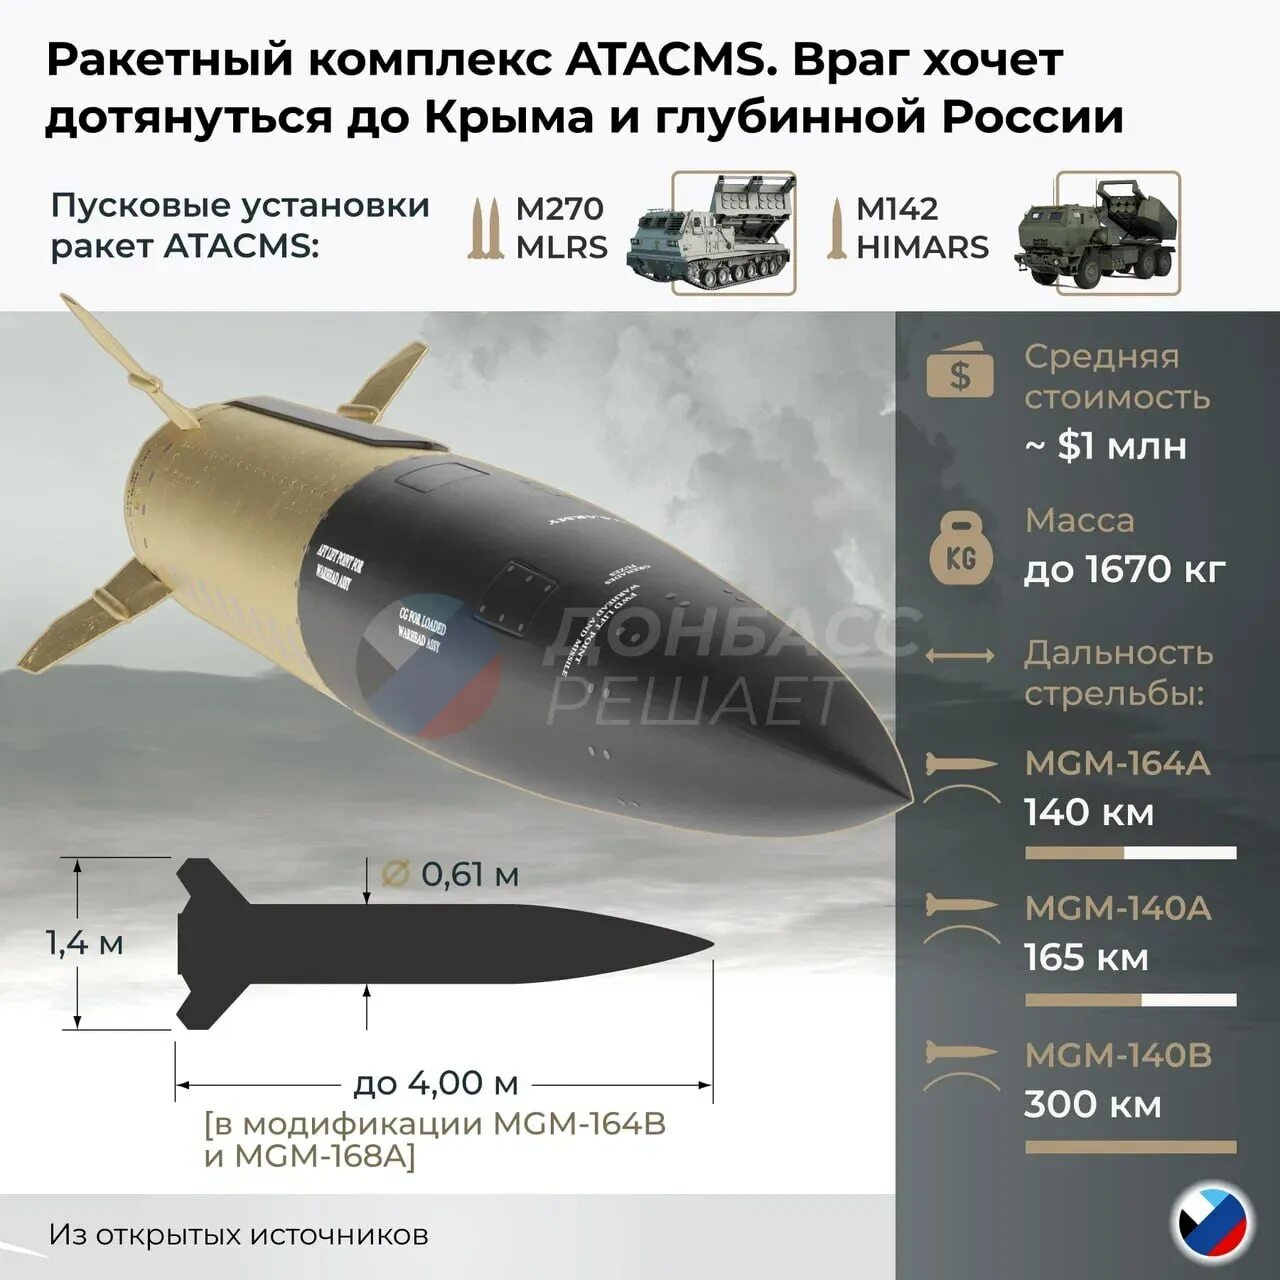 Атакмс дальность стрельбы. Ракета MGM-140 atacms. MGM-140 atacms характеристики. Atacms ракета характеристики. MGM-168 atacms.